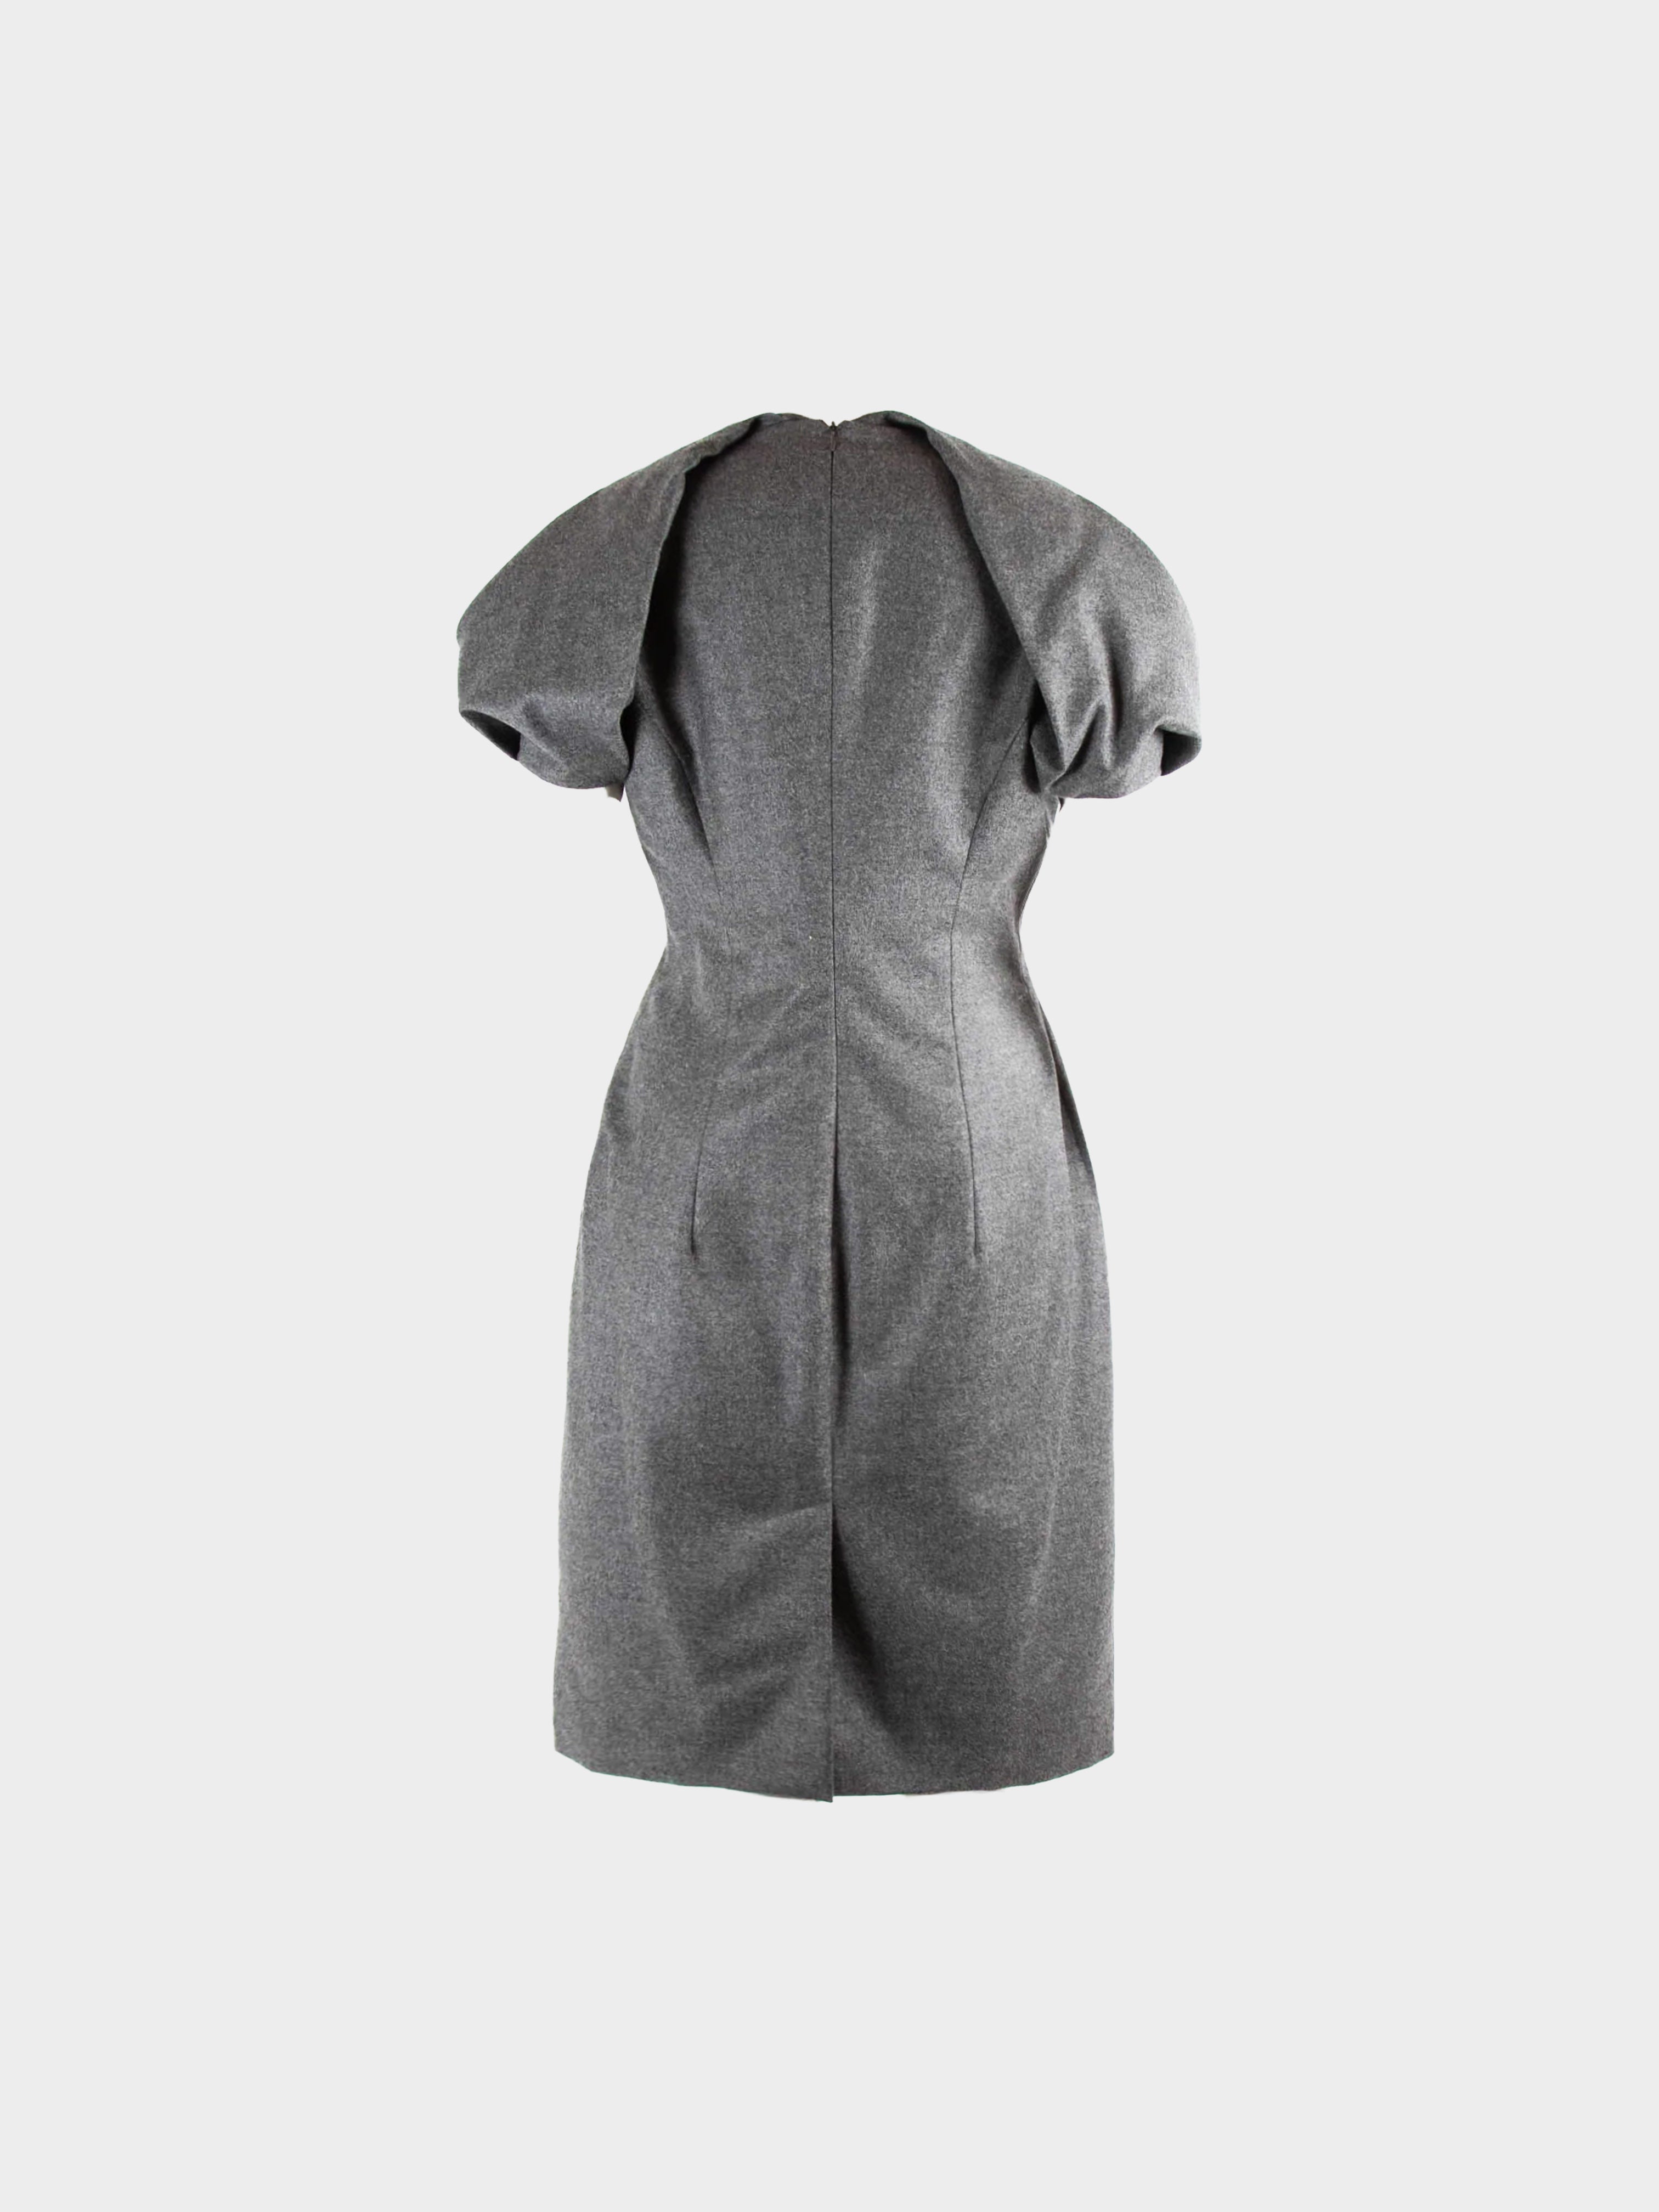 Alexander McQueen 2010s Grey Wool Dress